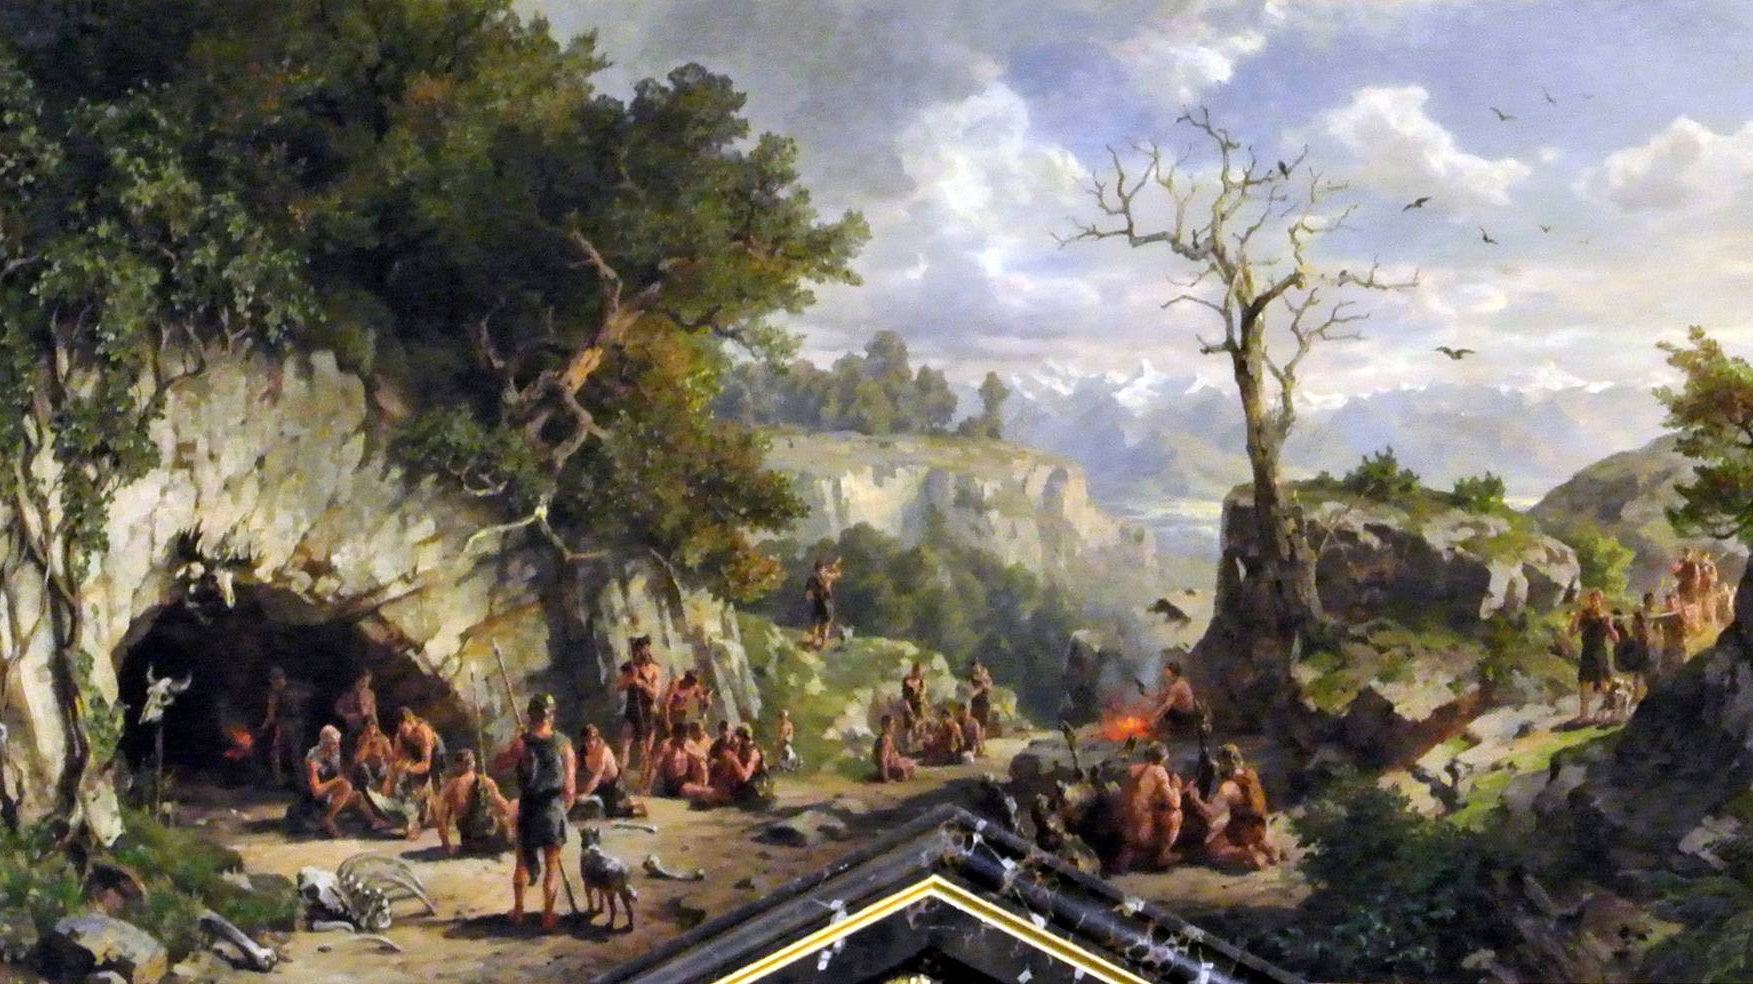 Хьюго Дарнаут. Идеальный образ из каменного века - пещерные жители. 1885